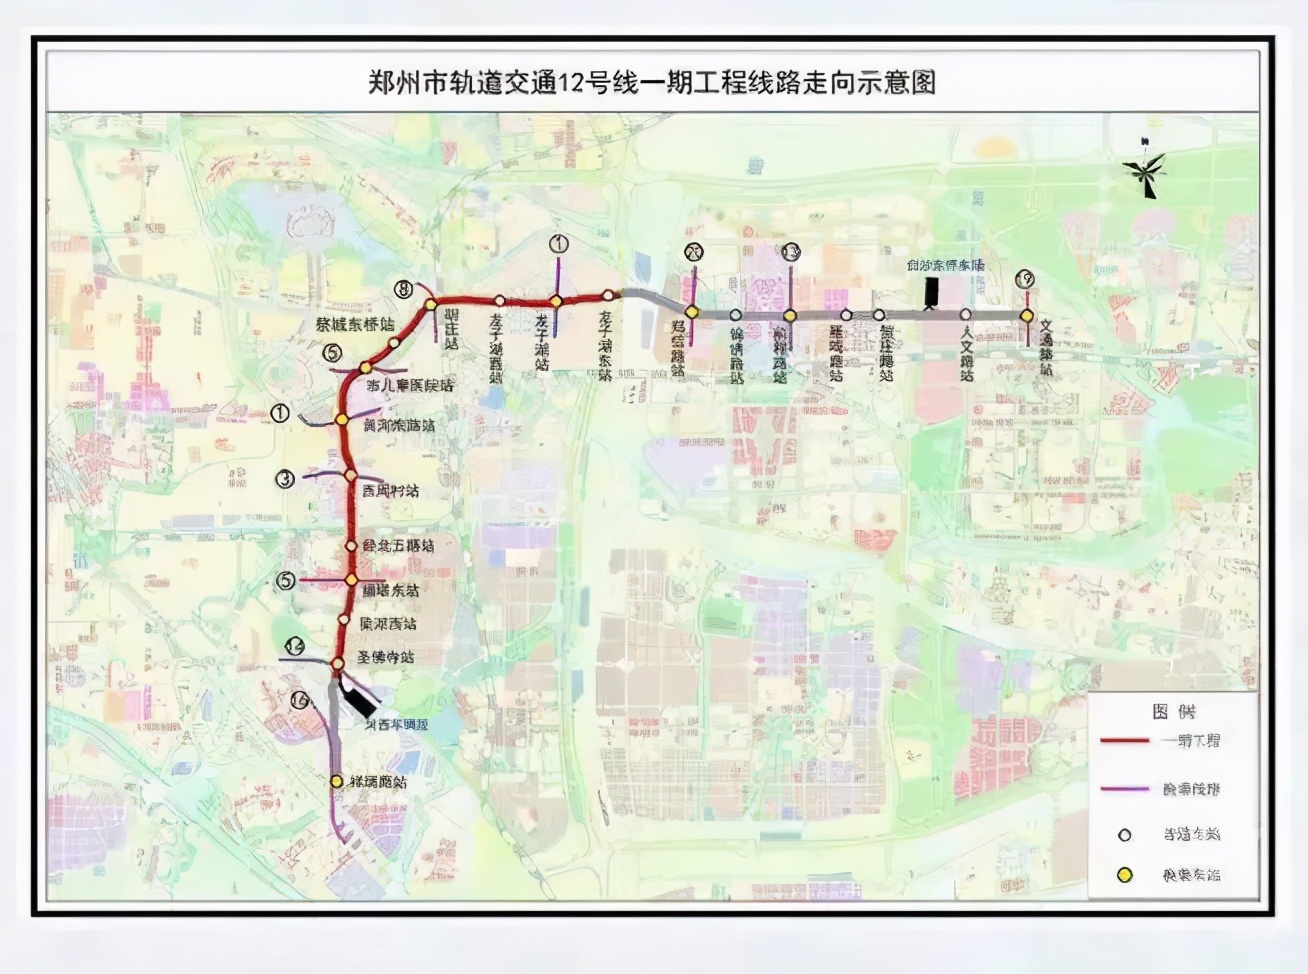 2020年底郑州地铁7线齐开,地铁大时代来临了!